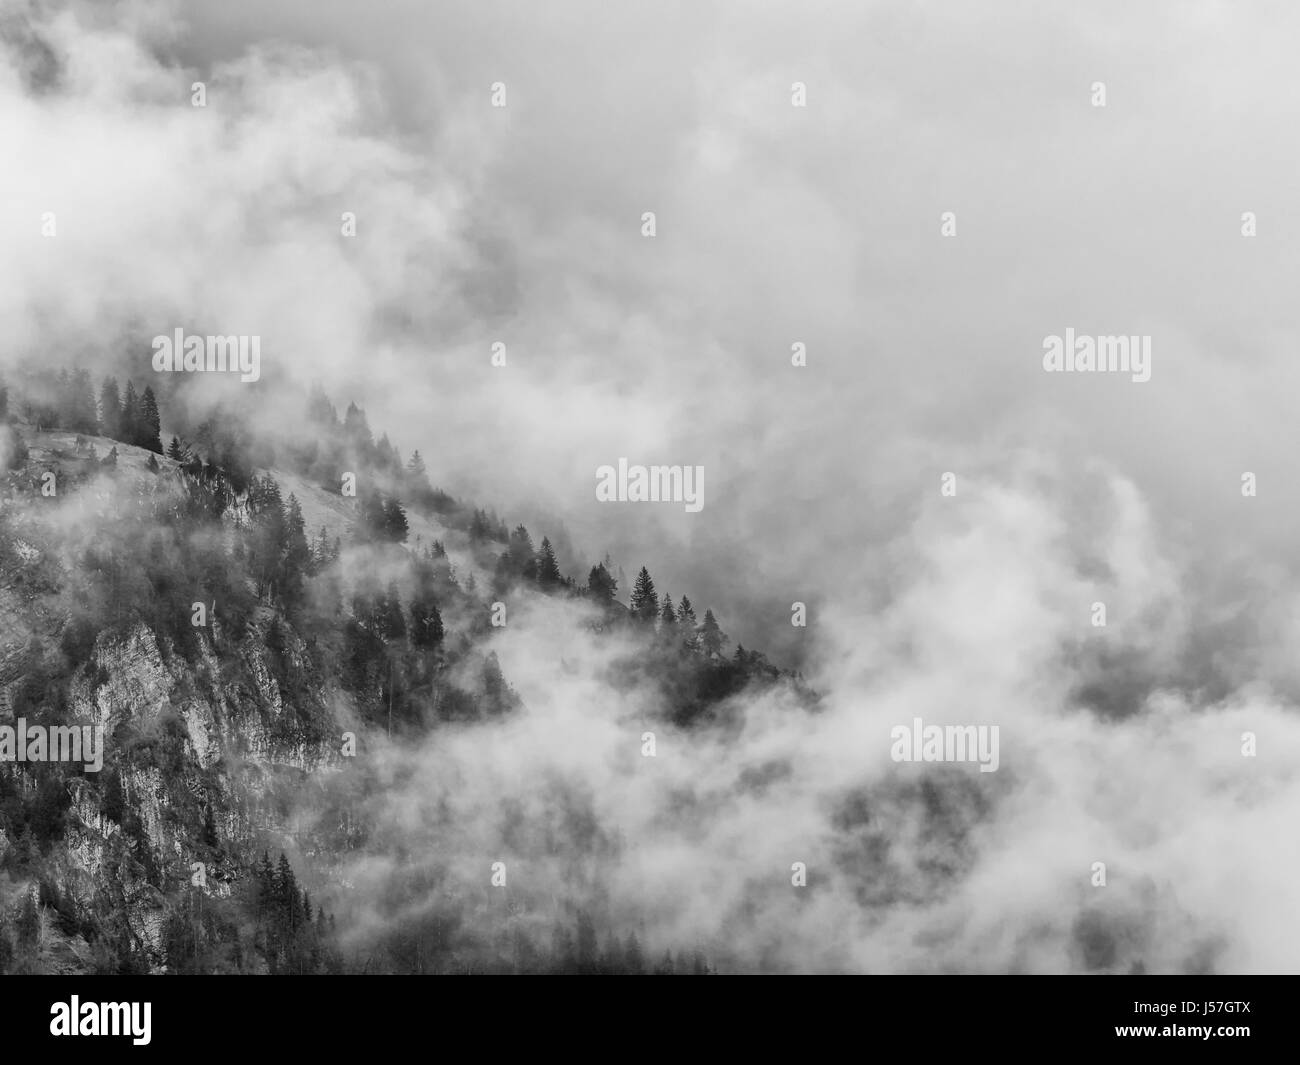 Switzerland mountain side trees enveloped in swirling cloud Stock Photo